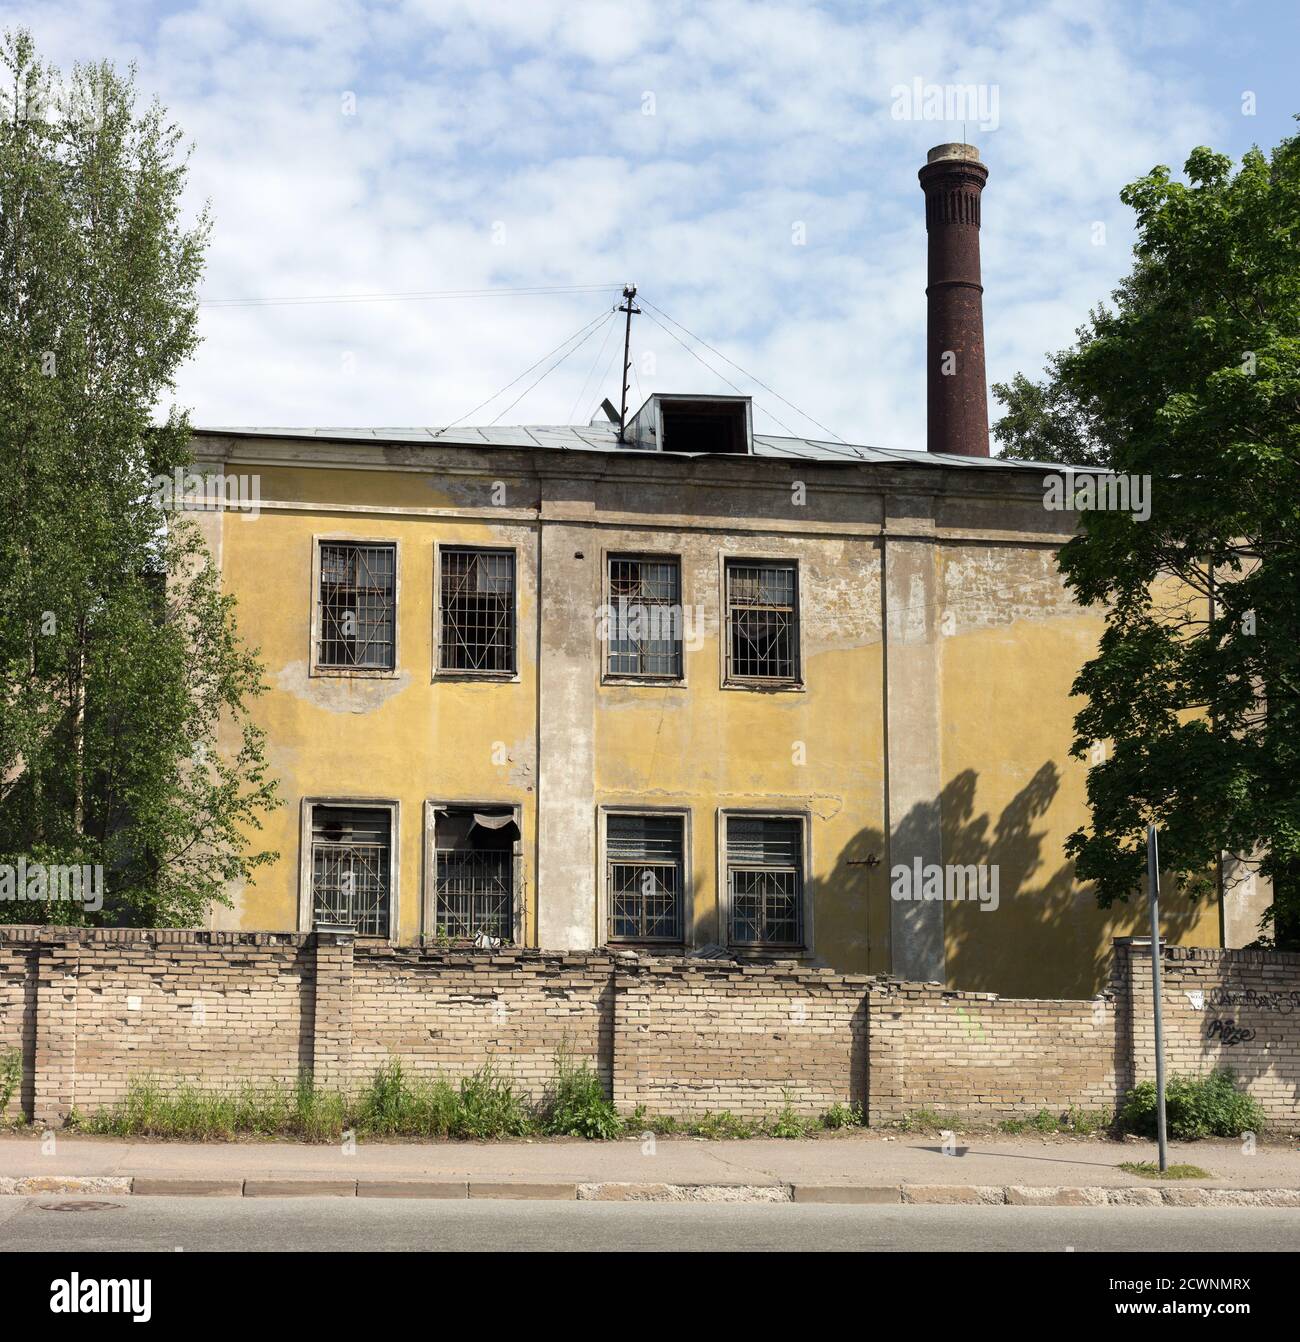 Le bâtiment de l'hôpital psychiatrique de Panteleimonovskaya avant la rénovation vue de la rue Afonskaya, Saint-Pétersbourg, Russie Banque D'Images